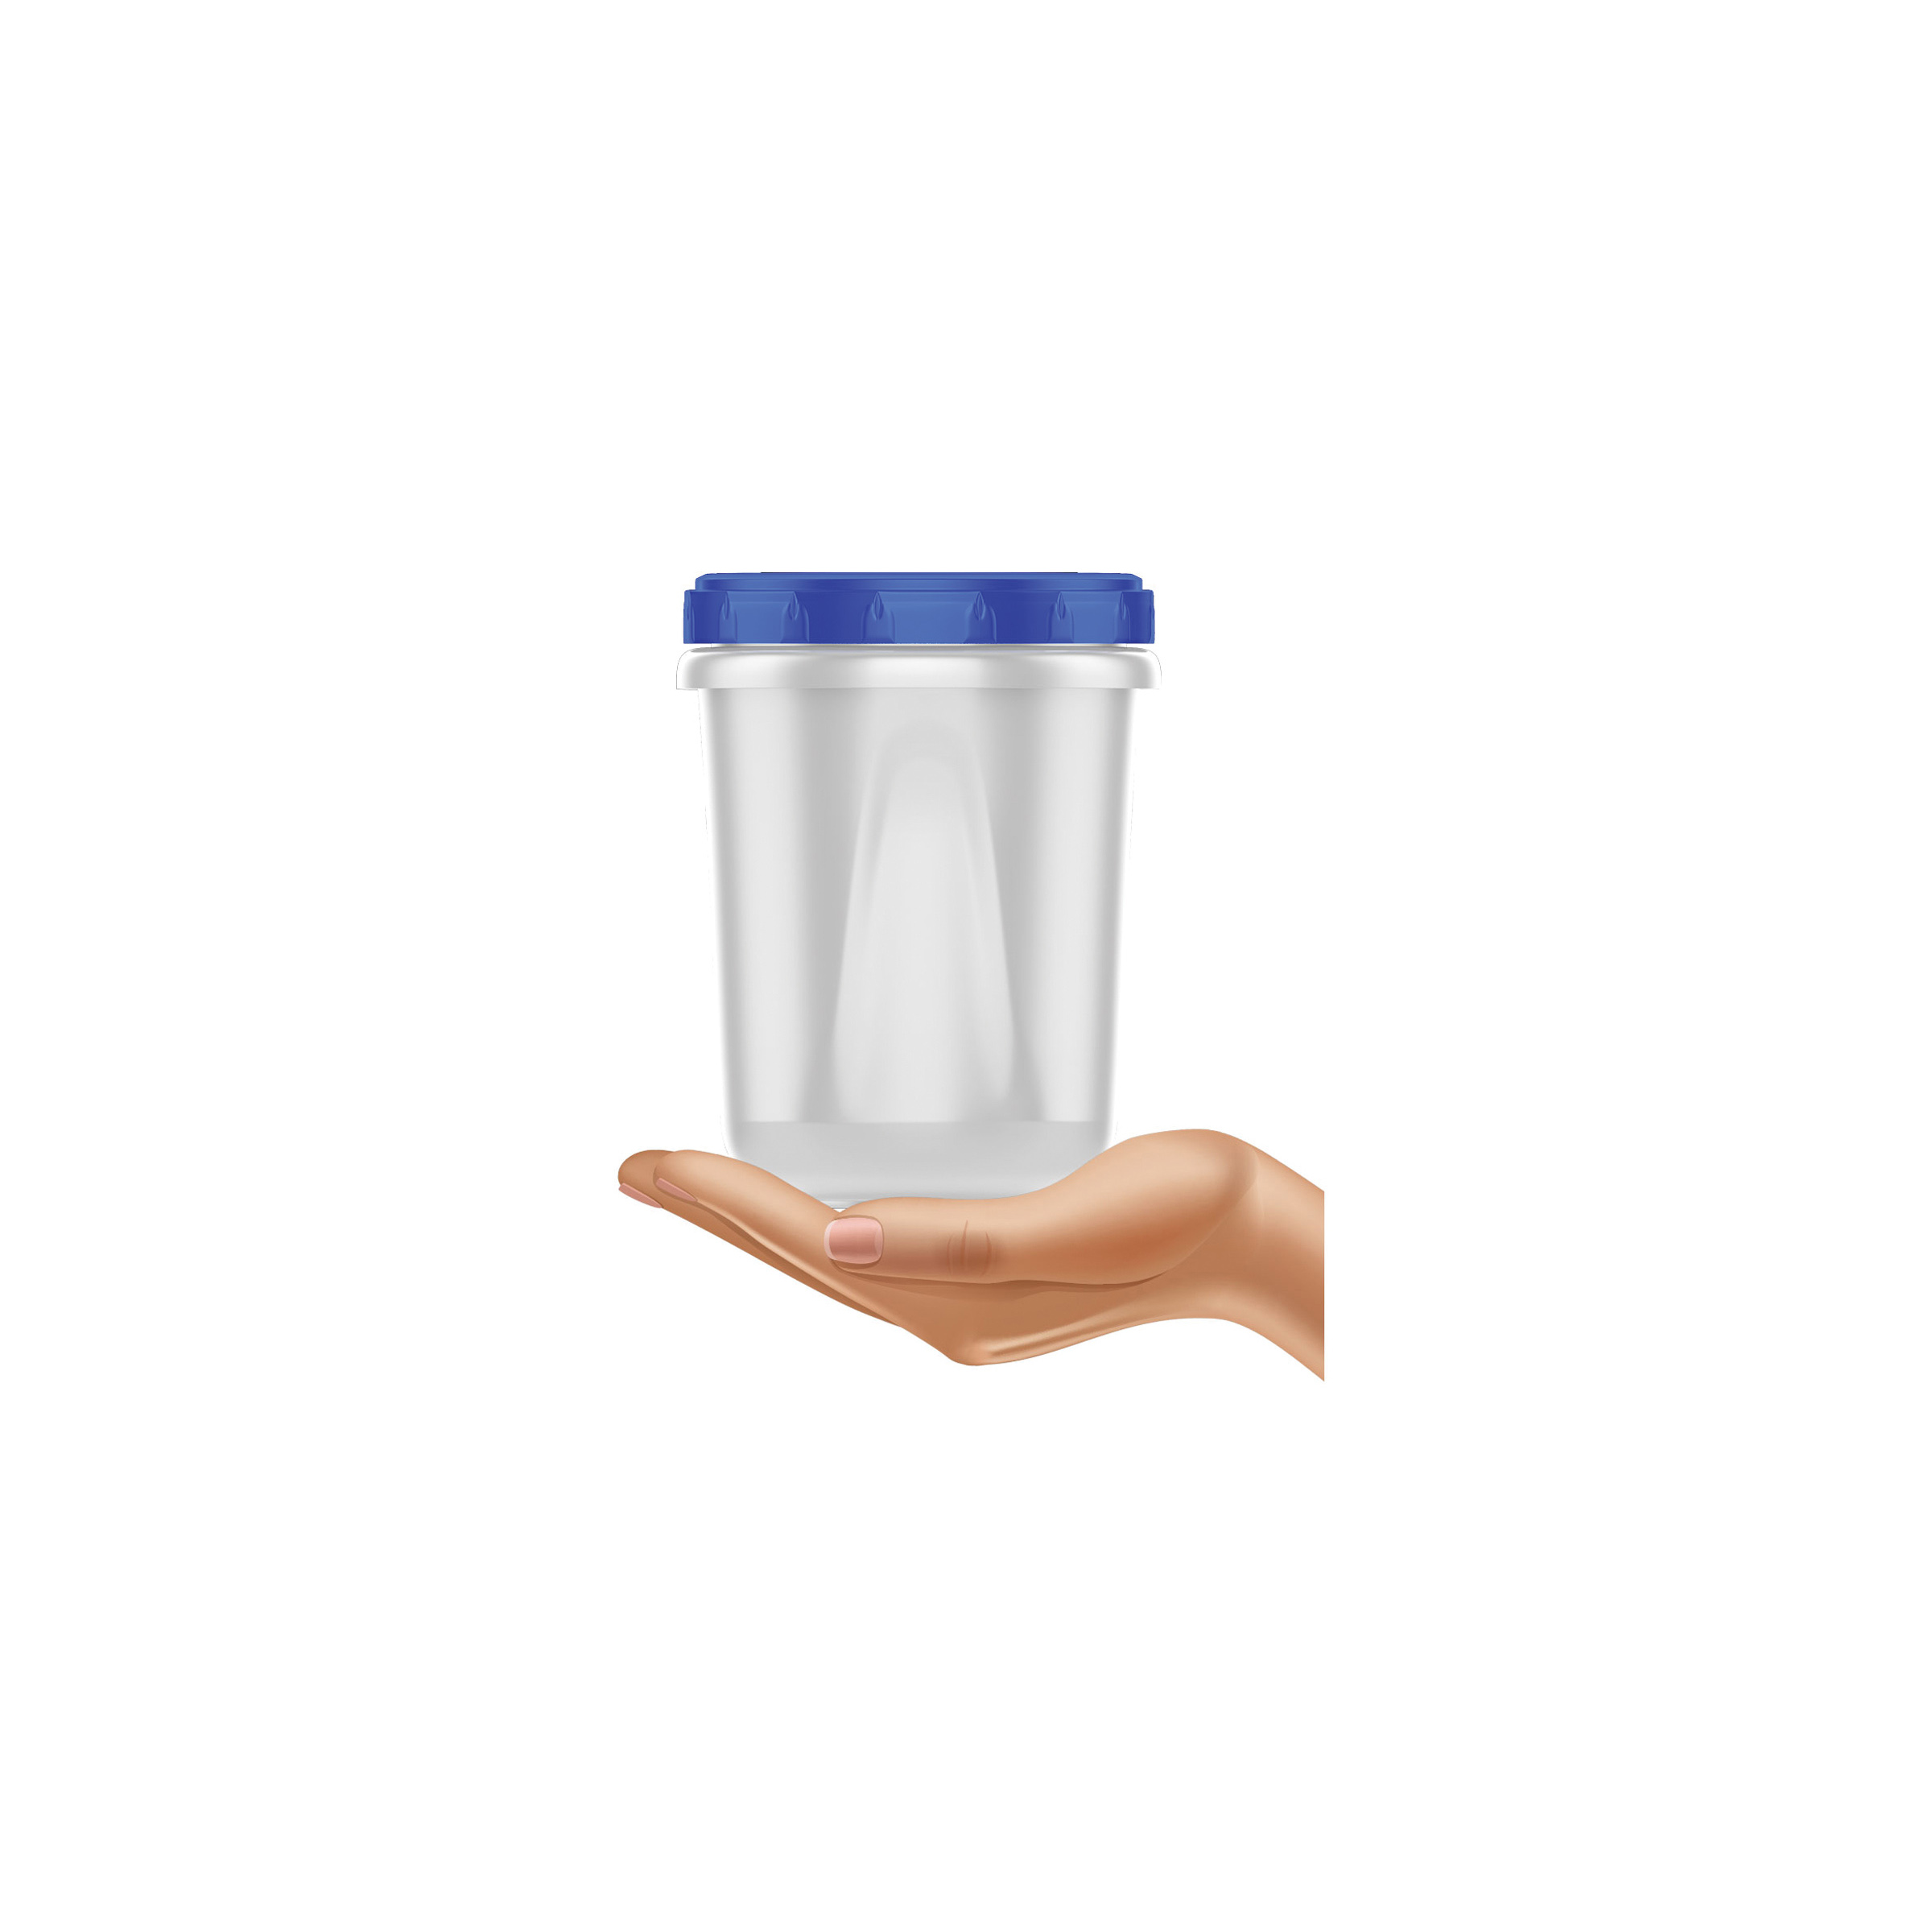 Ziploc Containers & Lids, Round, Medium, Plastic Containers